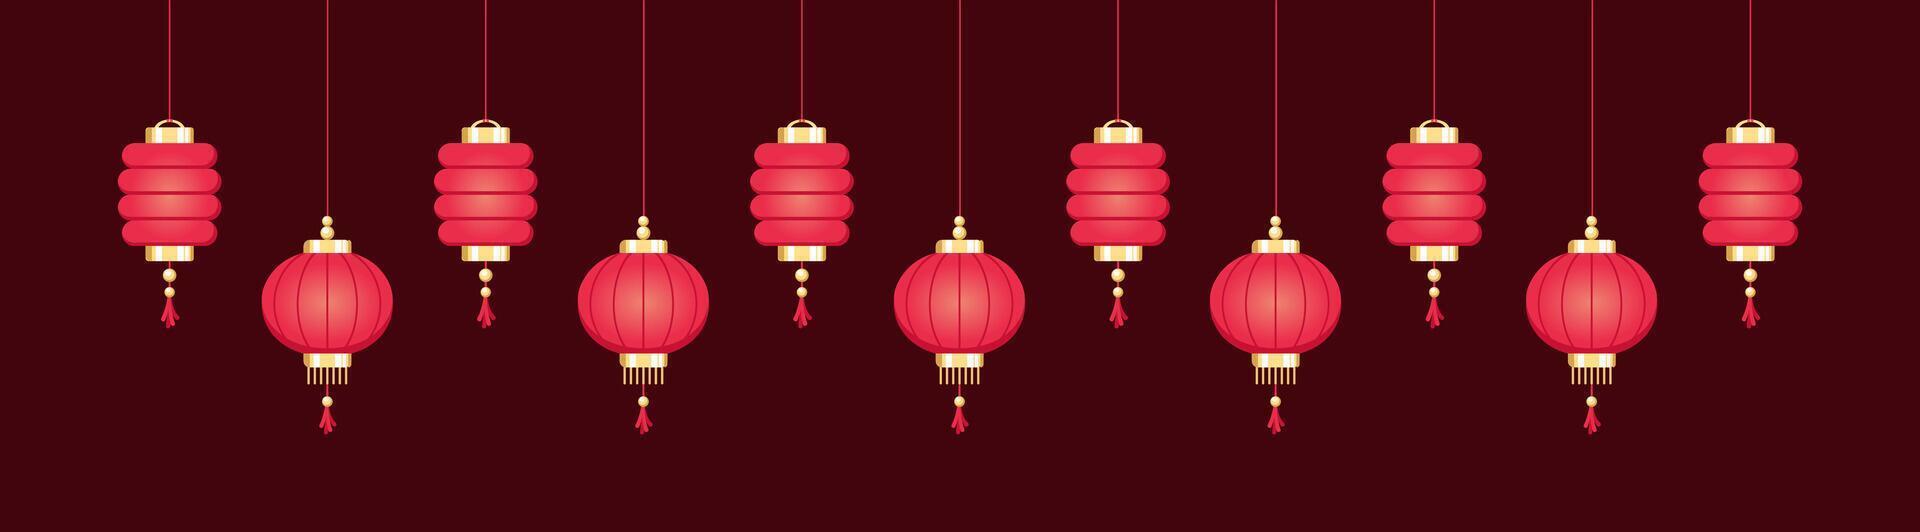 sospeso Cinese lanterne bandiera confine, lunare nuovo anno e metà autunno Festival grafico vettore